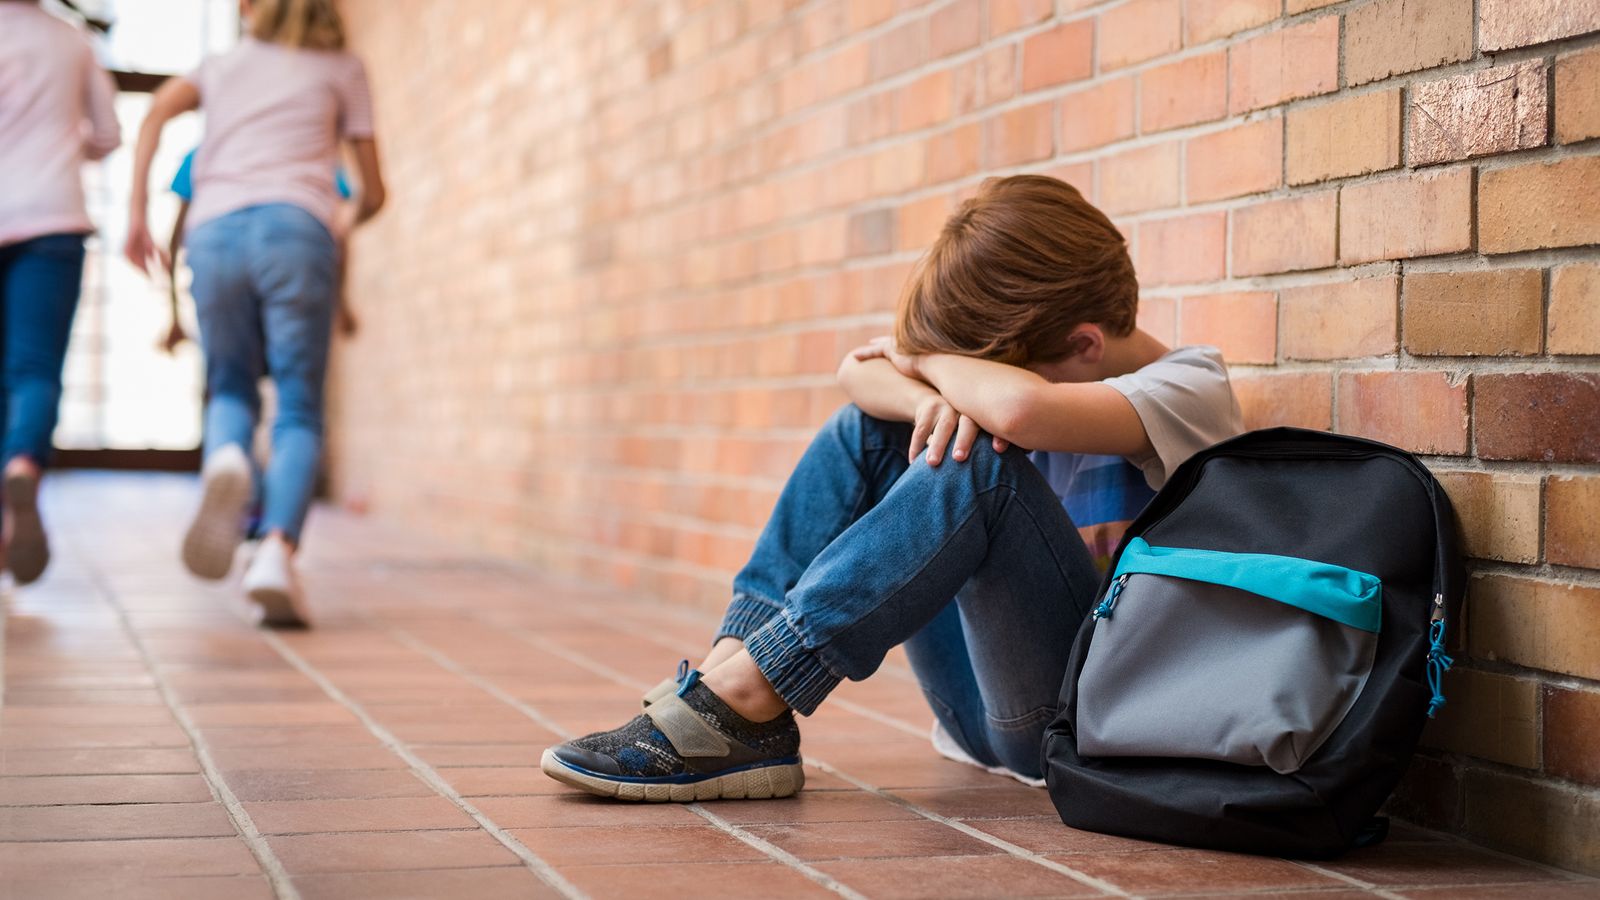 Verzweifeltes Kind sitzt in der Schule an einer Mauer